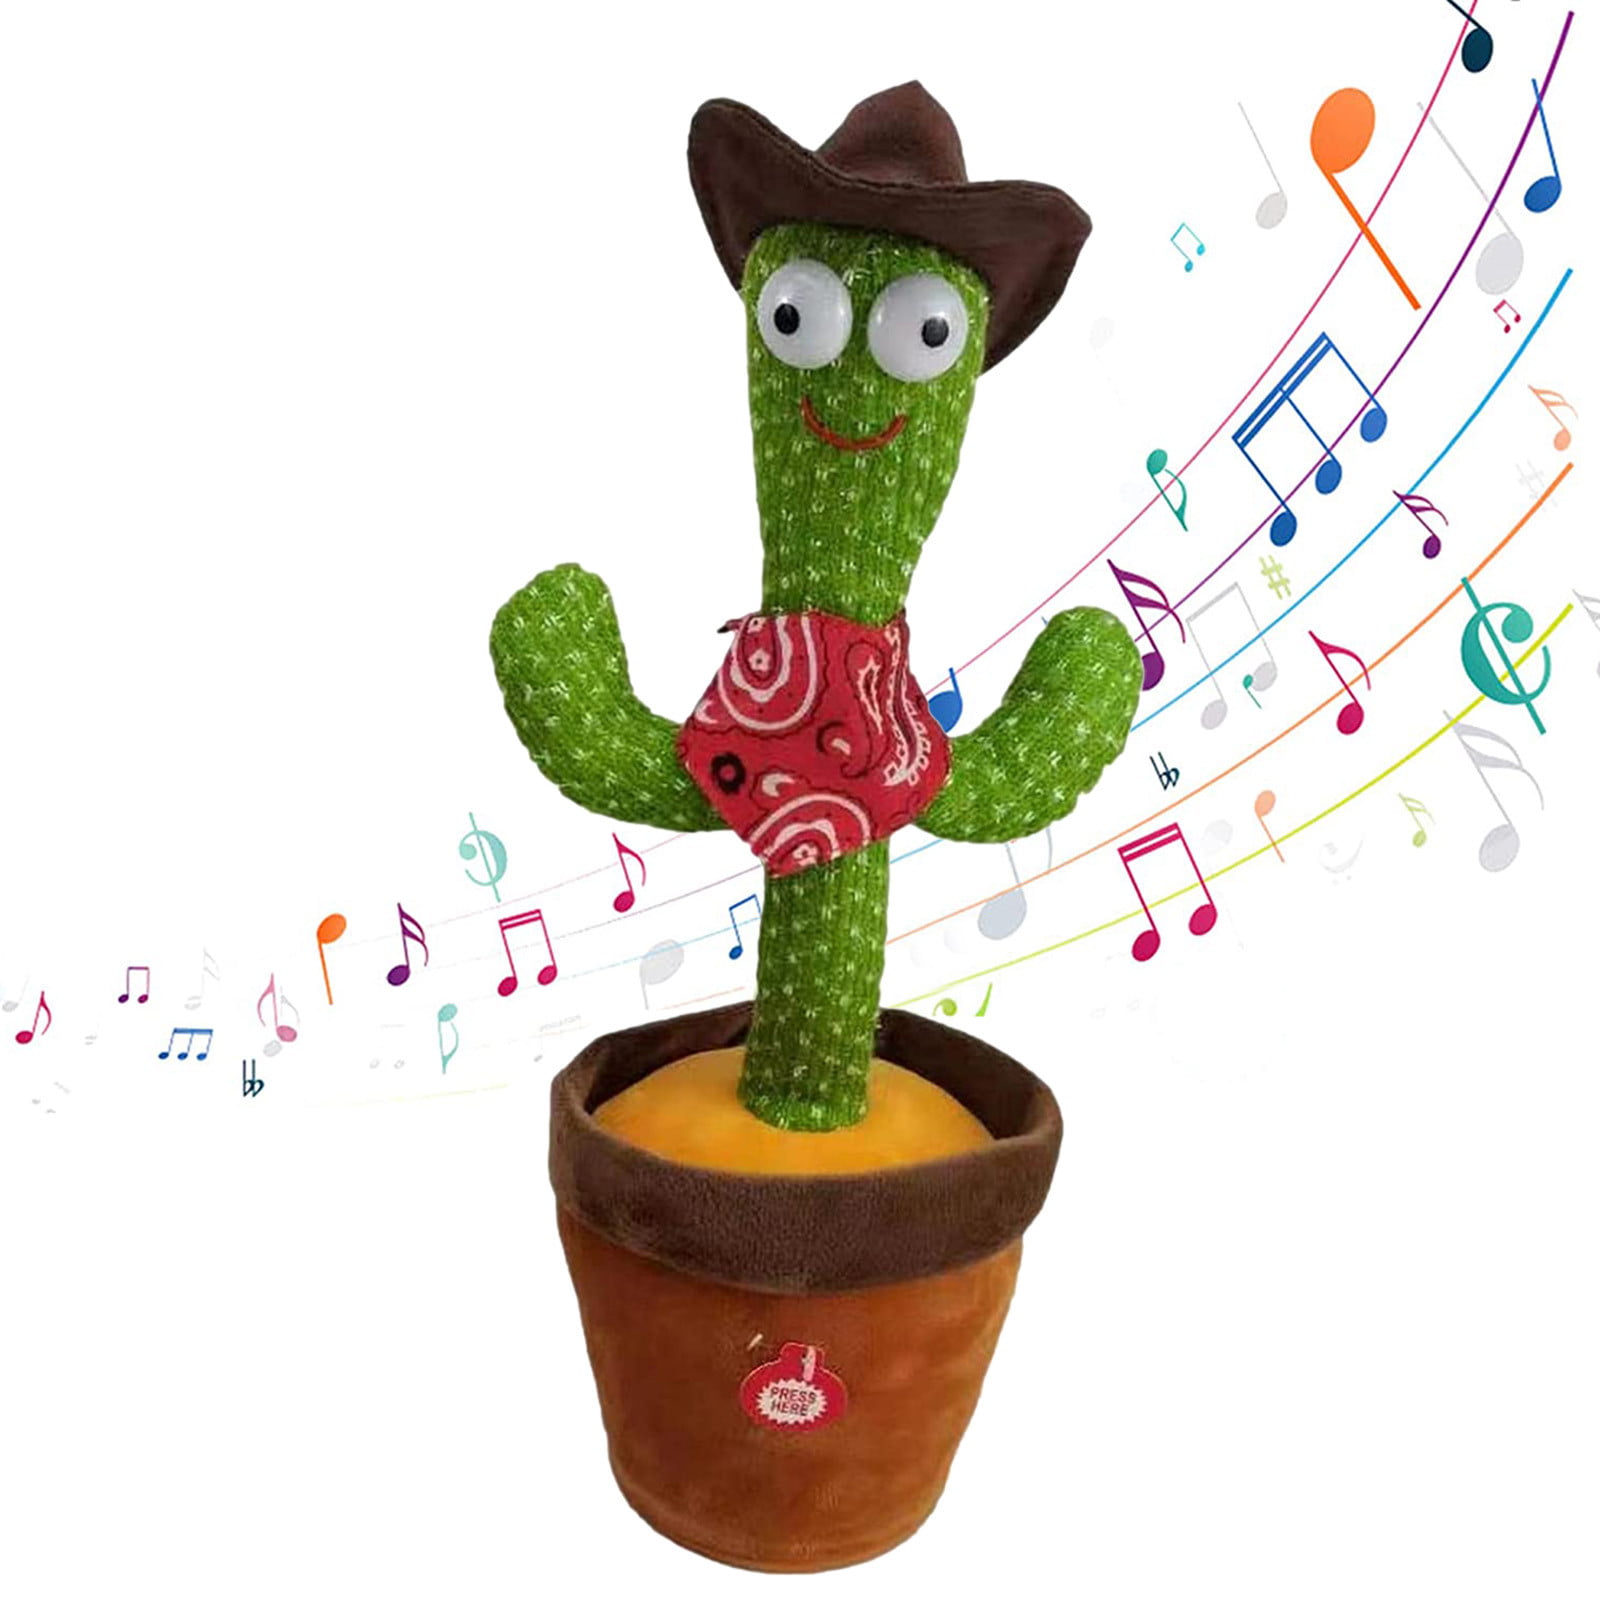 Recording Light up Talking Dancing Cactus Plush Toy Electronic Shake Kids Gift